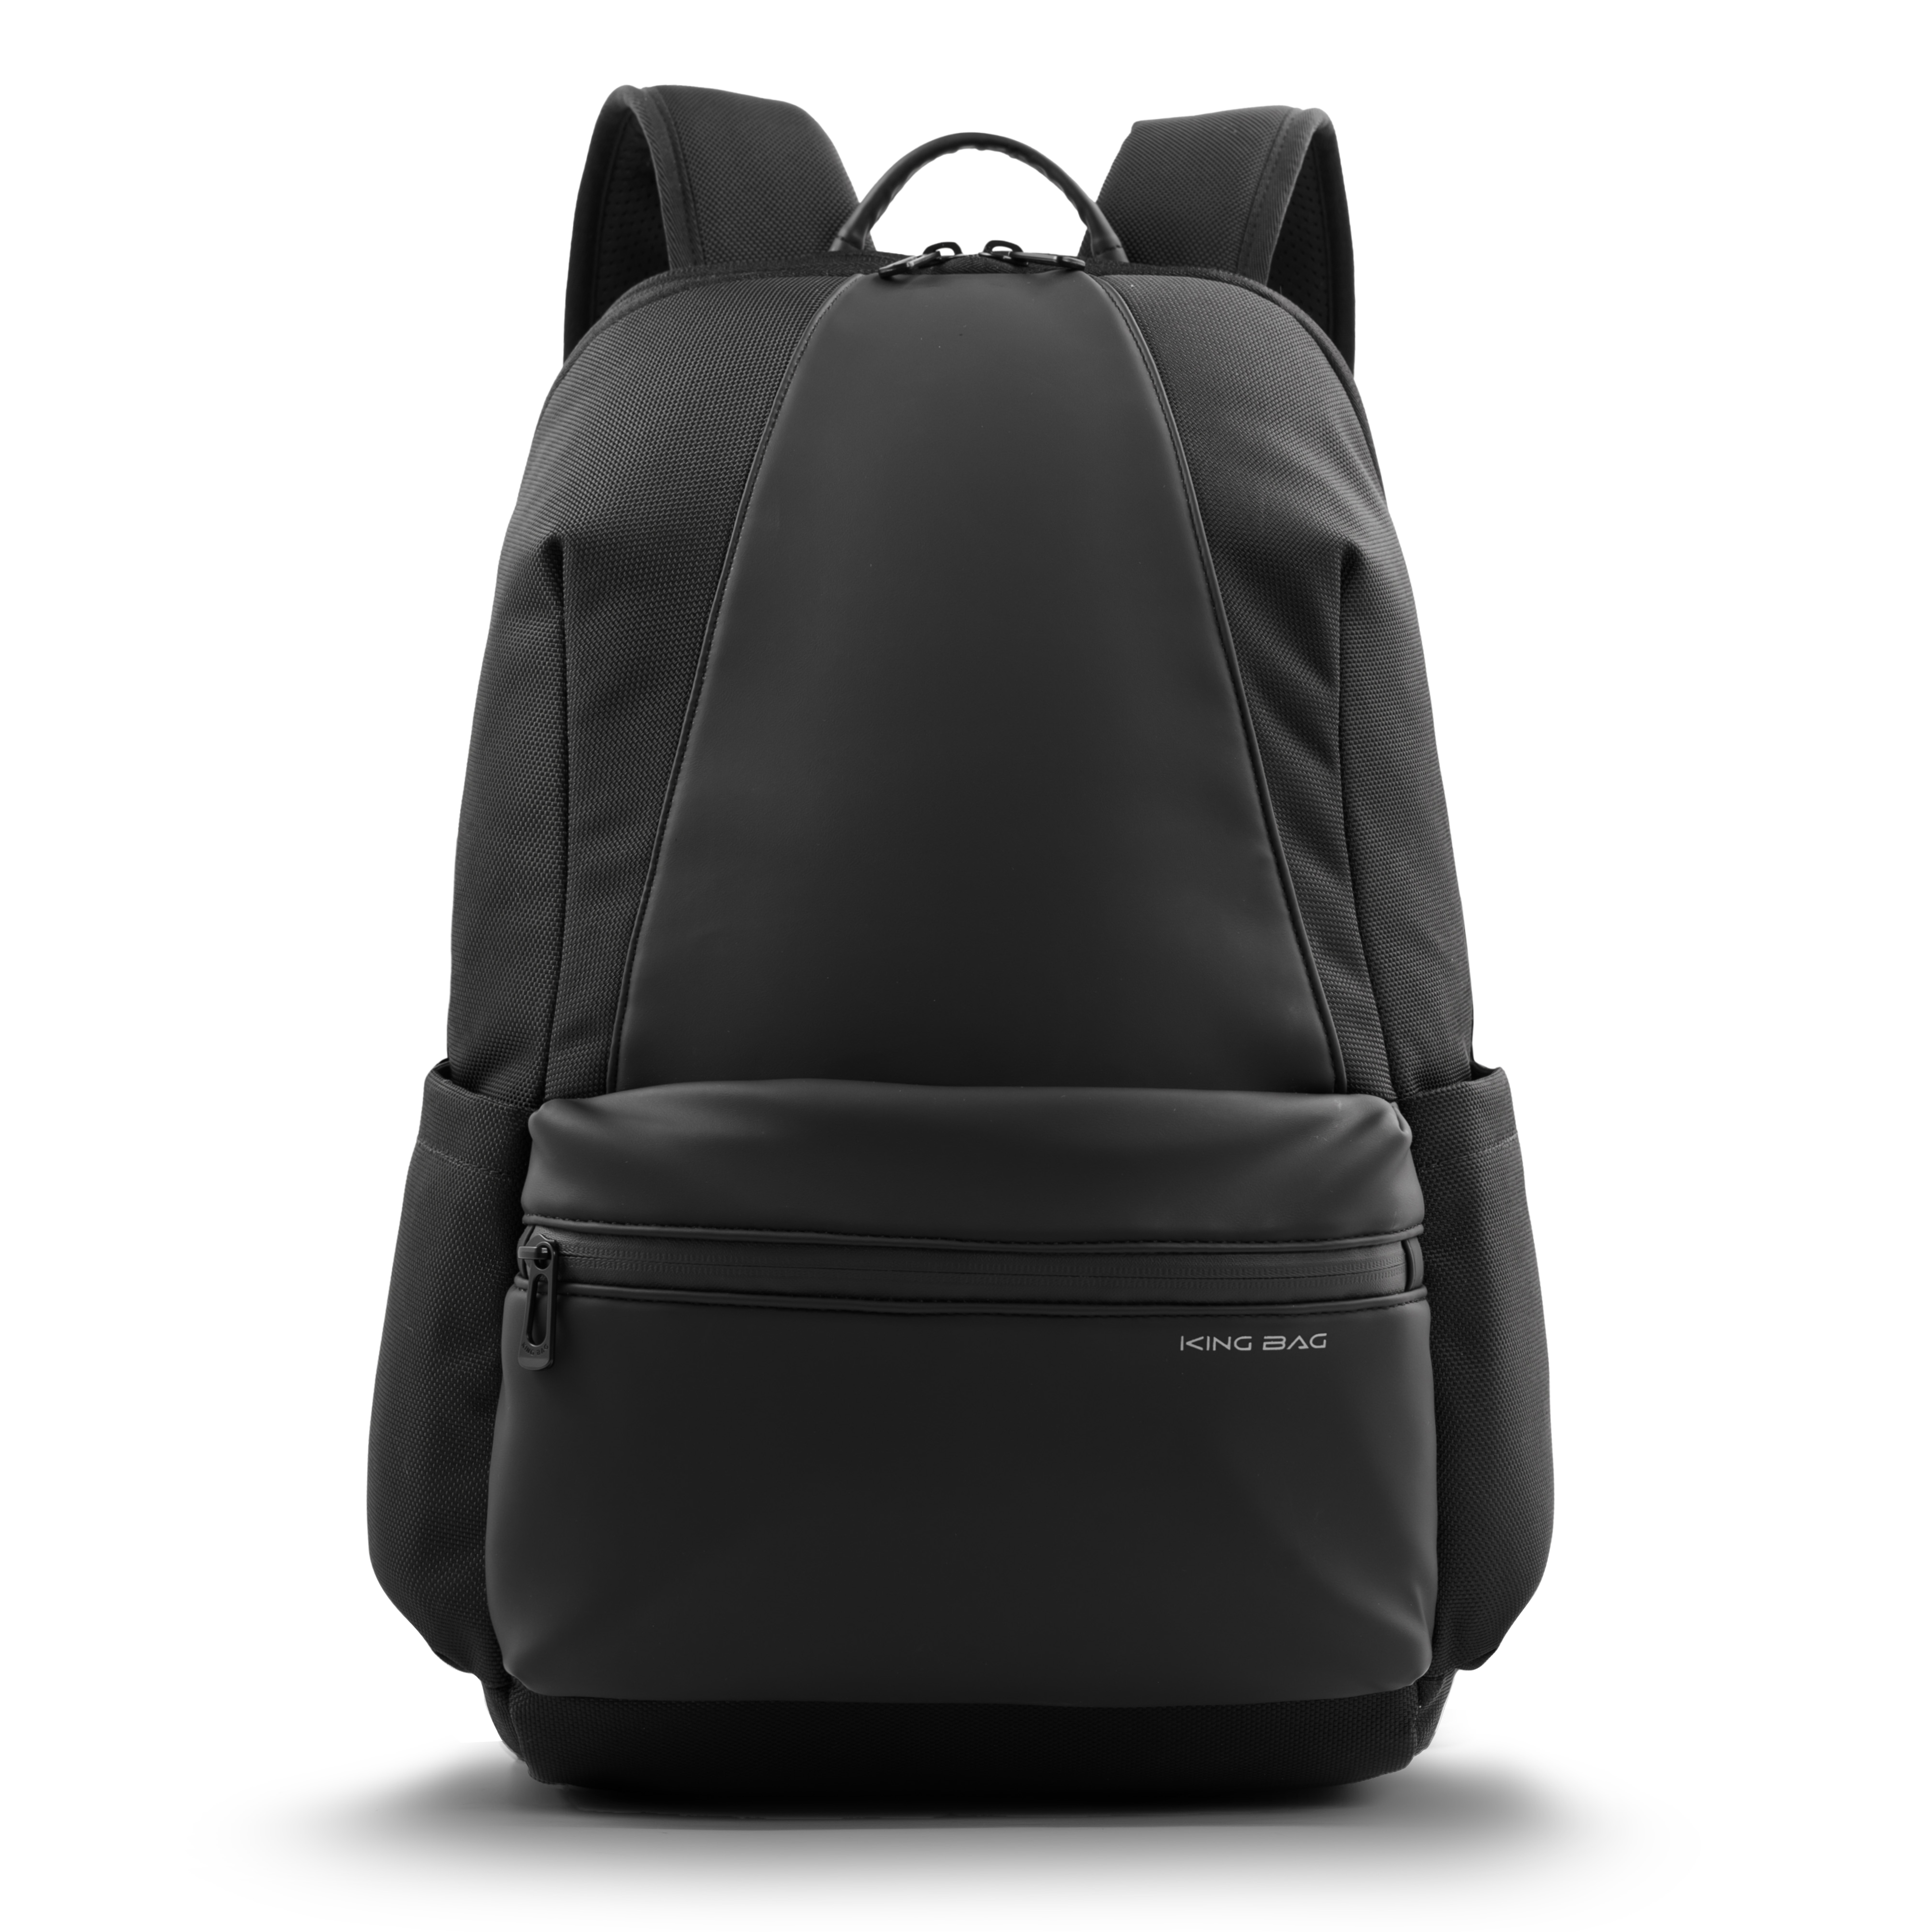 Balo laptop KINGBAG PASSION 14” trẻ trung, gọn nhẹ, tích hợp USB, ngăn tablet, đai vali tiện dụng - Hàng chính hãng